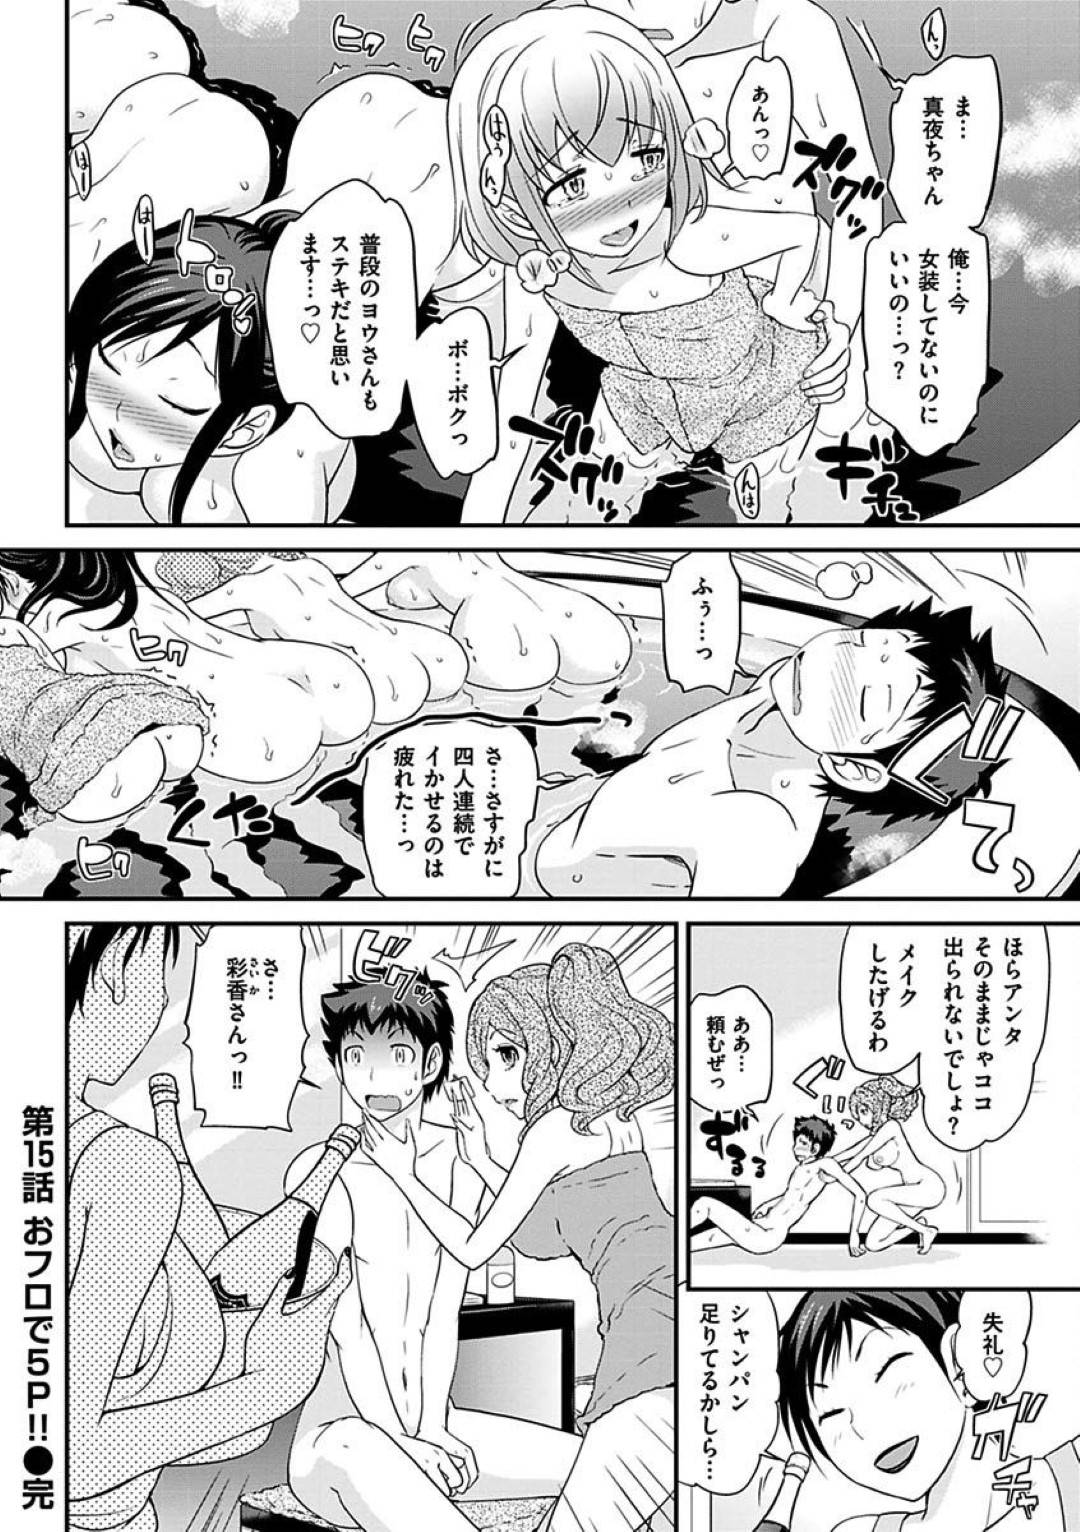 【エロ漫画】光子のお姉さんに言われ一緒にお風呂に入る事になったヨウと光子は、愛撫し中出しセックスをするとキャバ嬢達も乱入し5Pセックス【松任知基】